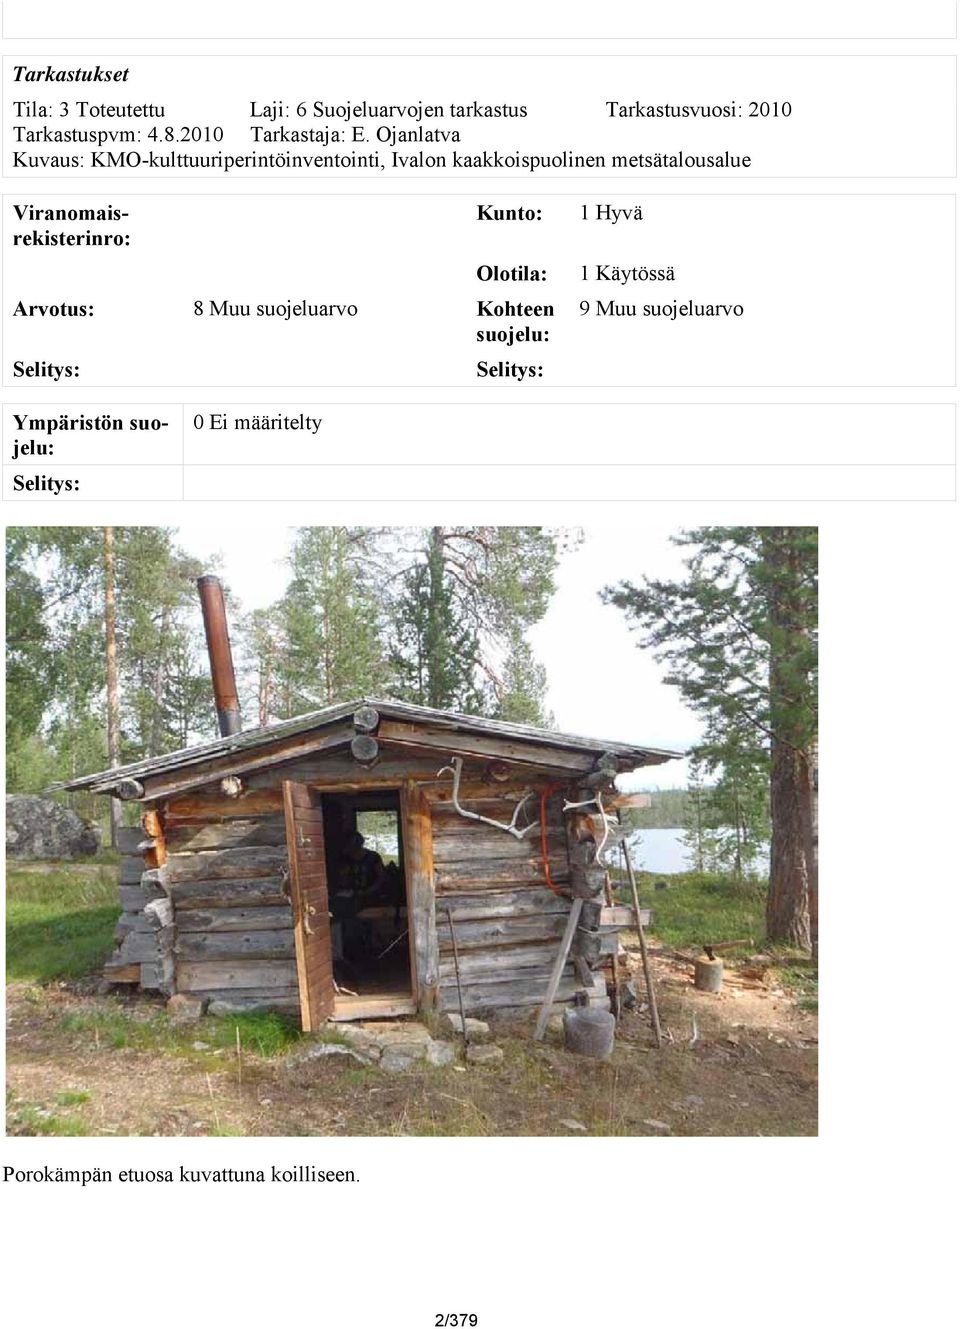 Ojanlatva Kuvaus: KMO-kulttuuriperintöinventointi, Ivalon kaakkoispuolinen metsätalousalue